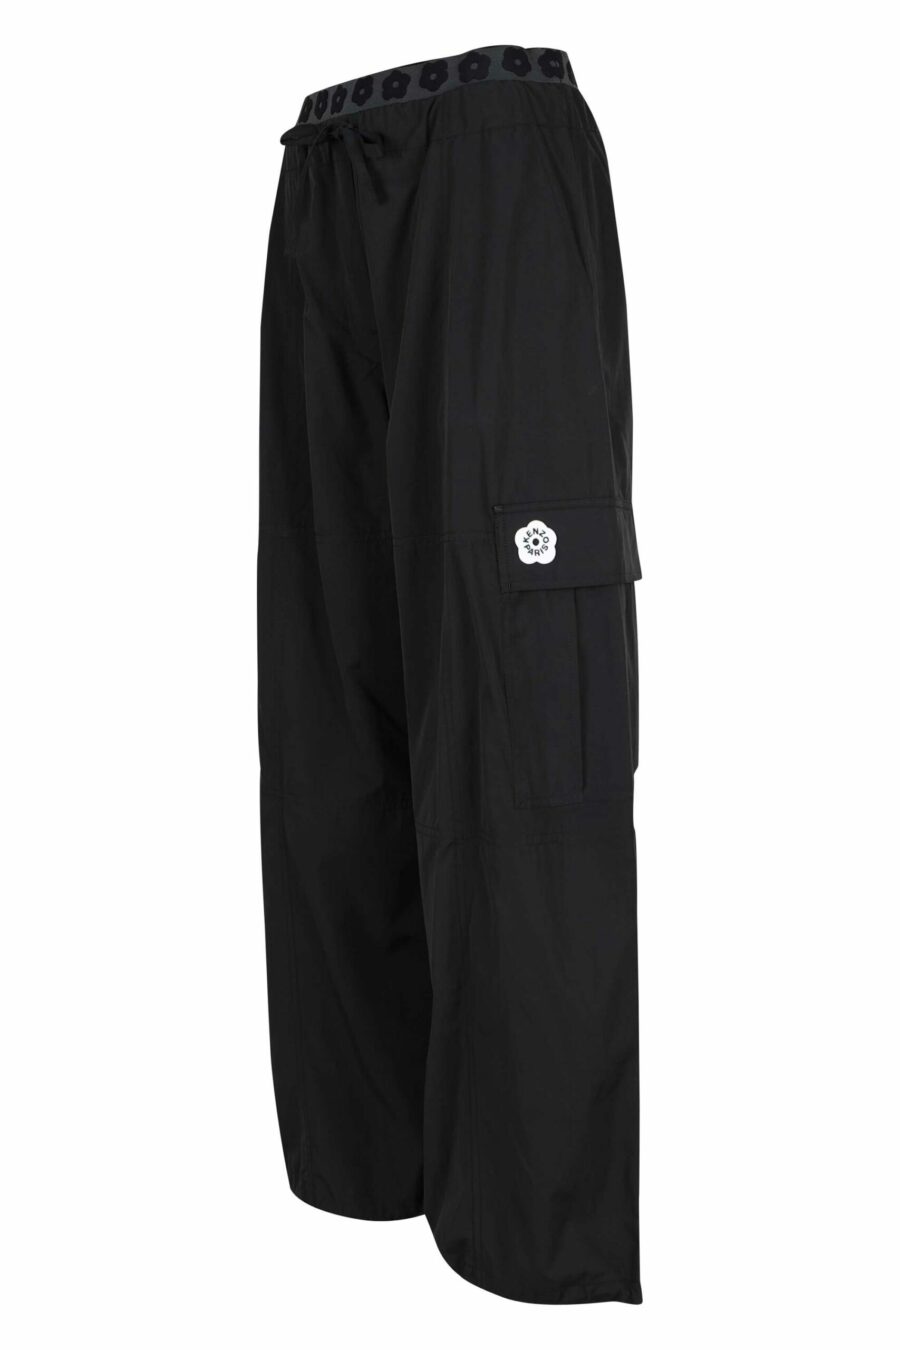 Pantalón negro cargo con logo "boke flower" - 3612230658301 1 scaled